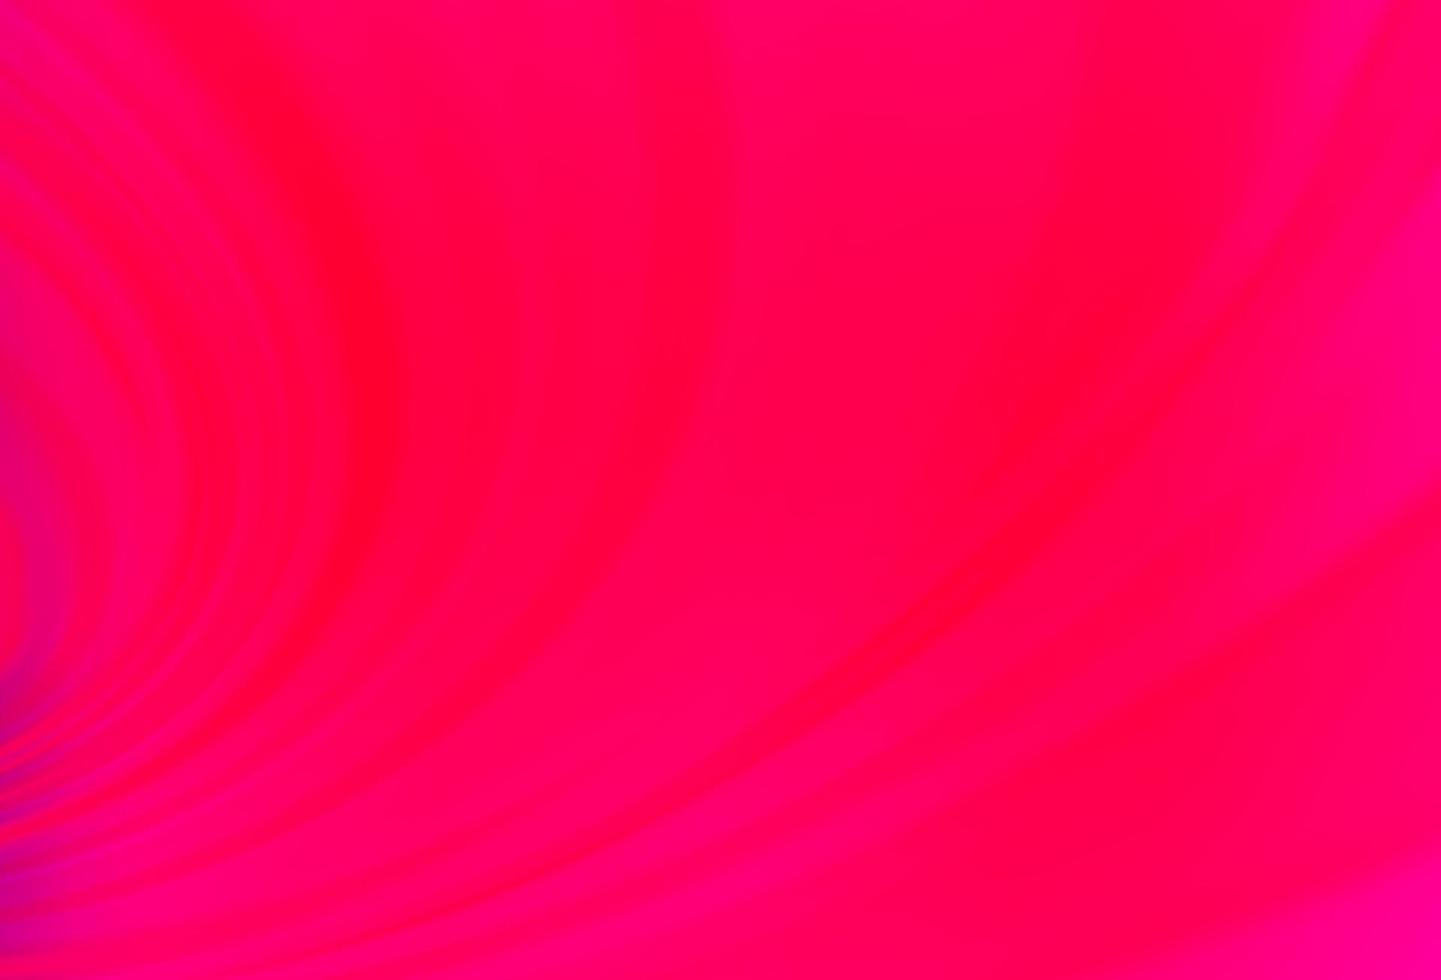 sfondo vettoriale viola chiaro, rosa con linee astratte.